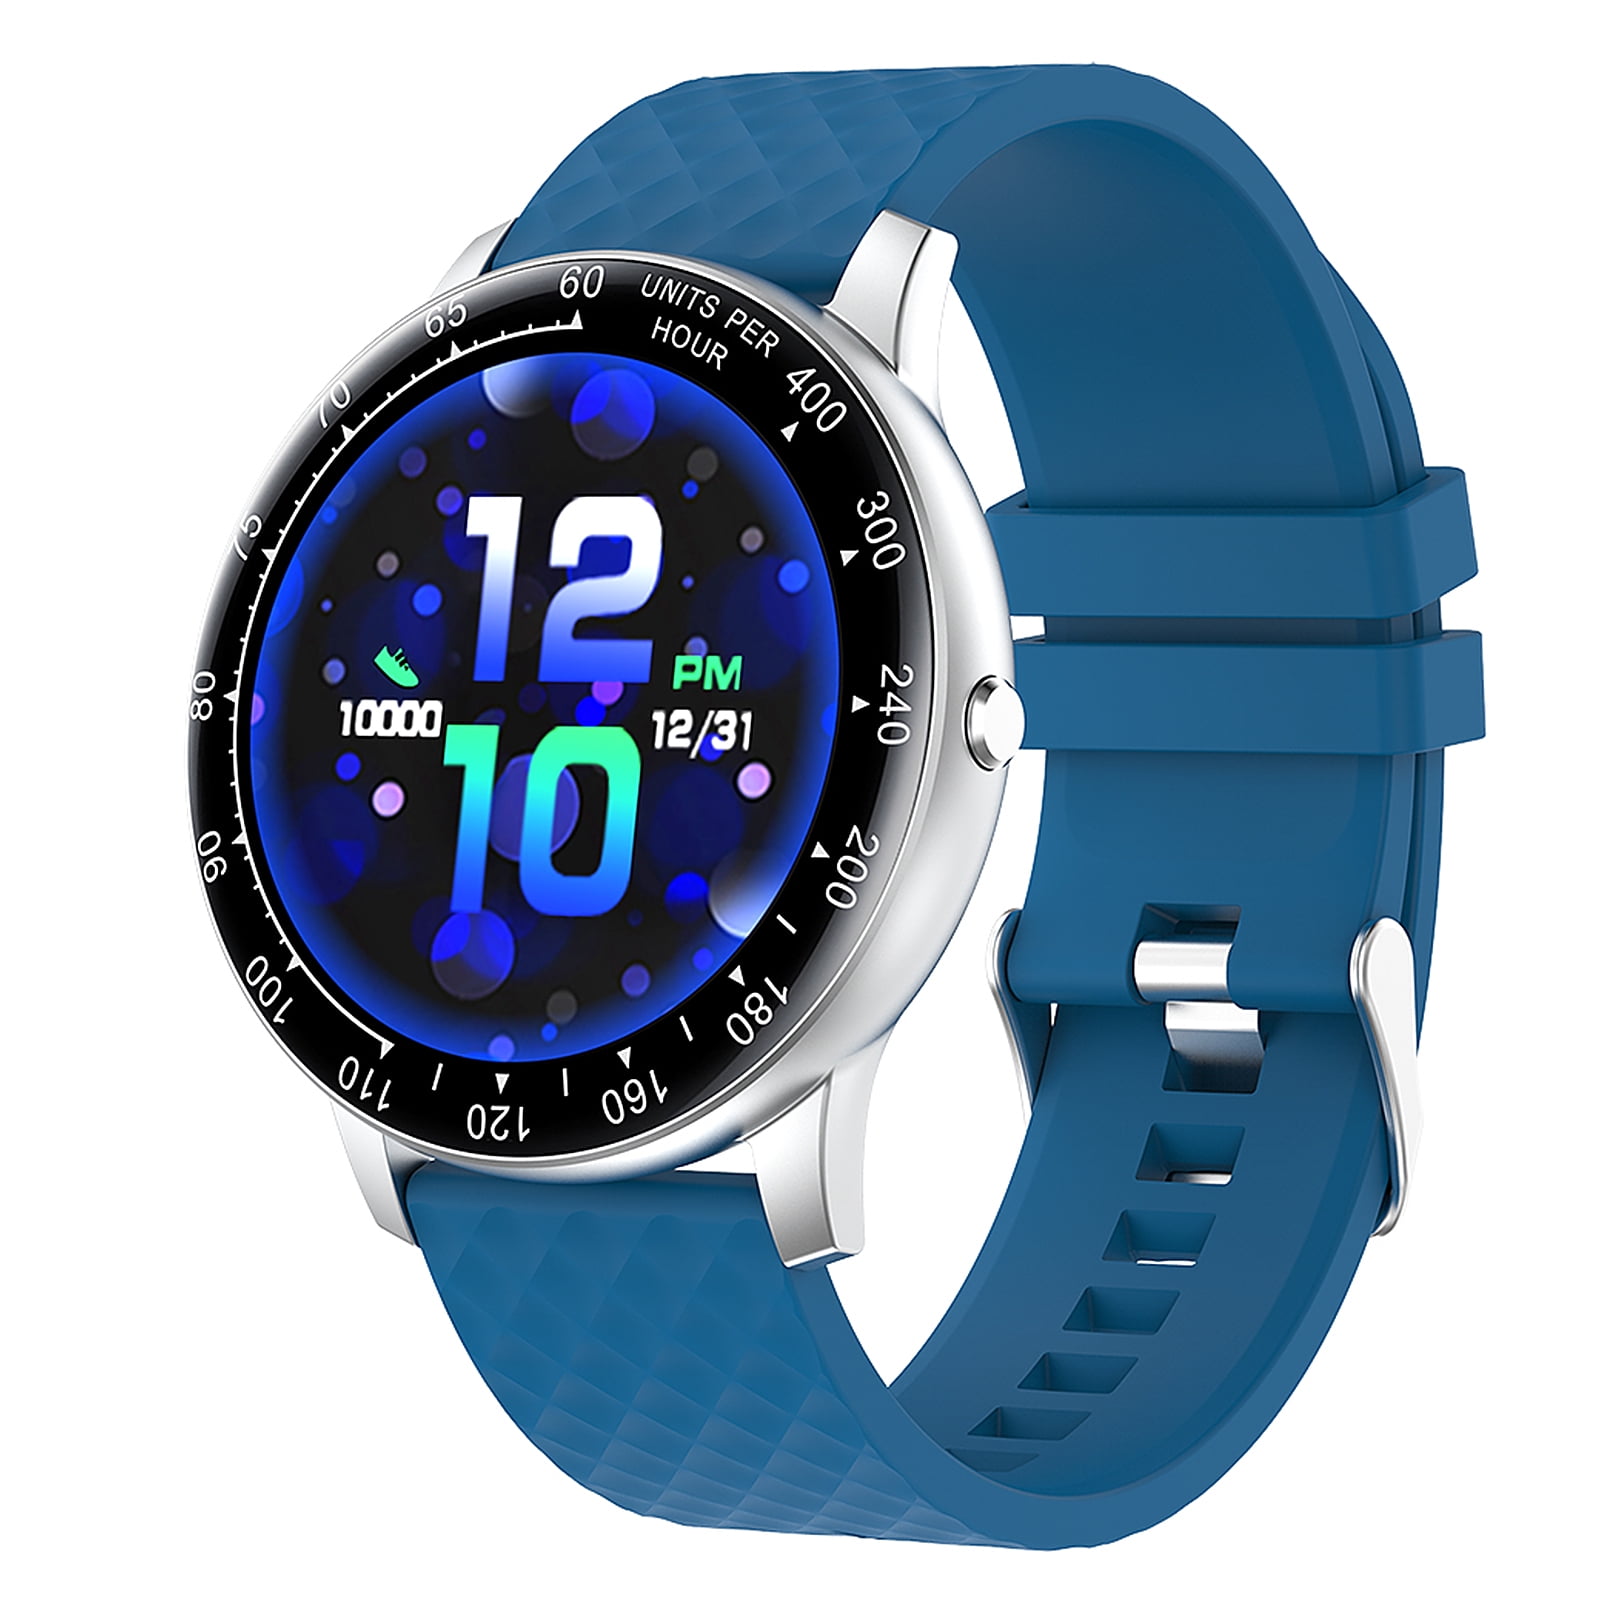 Часы bandrate отзывы. H30 Smart watch. Zl02d смарт часы синие. Женские водонепроницаемые наручные часы Smart watch h8. Смарт часы синие мужские.